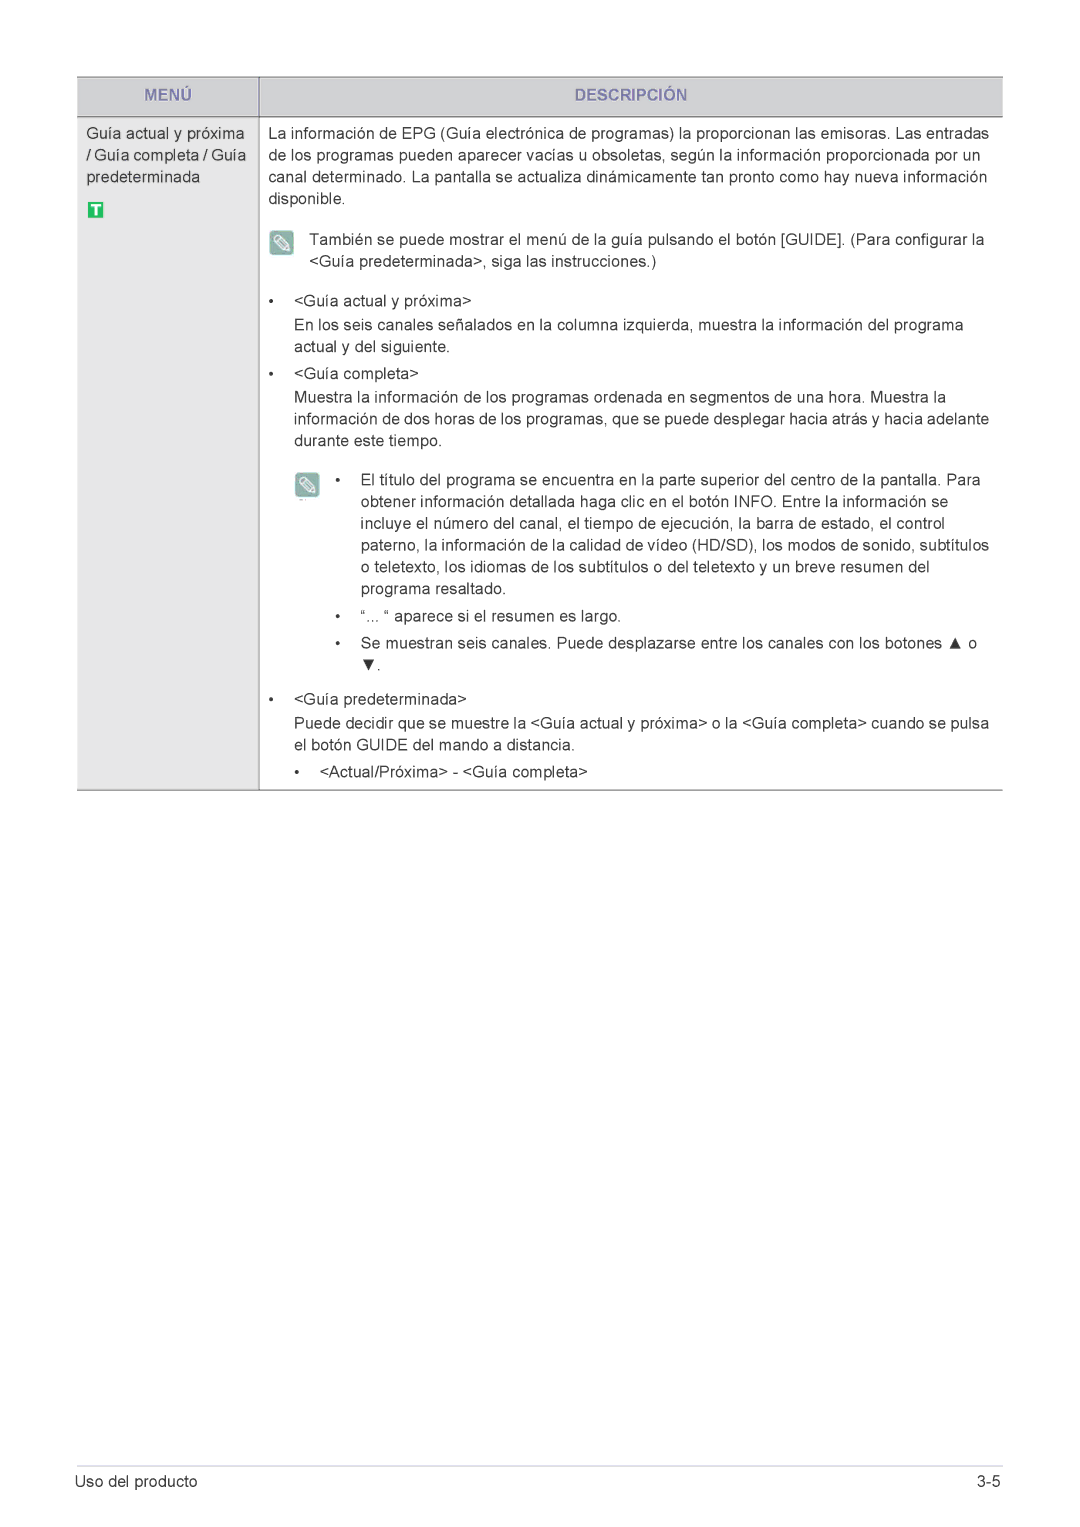 Samsung LS22EFHKFU/EN Guía actual y próxima, Guía completa / Guía, Disponible, Guía predeterminada, siga las instrucciones 